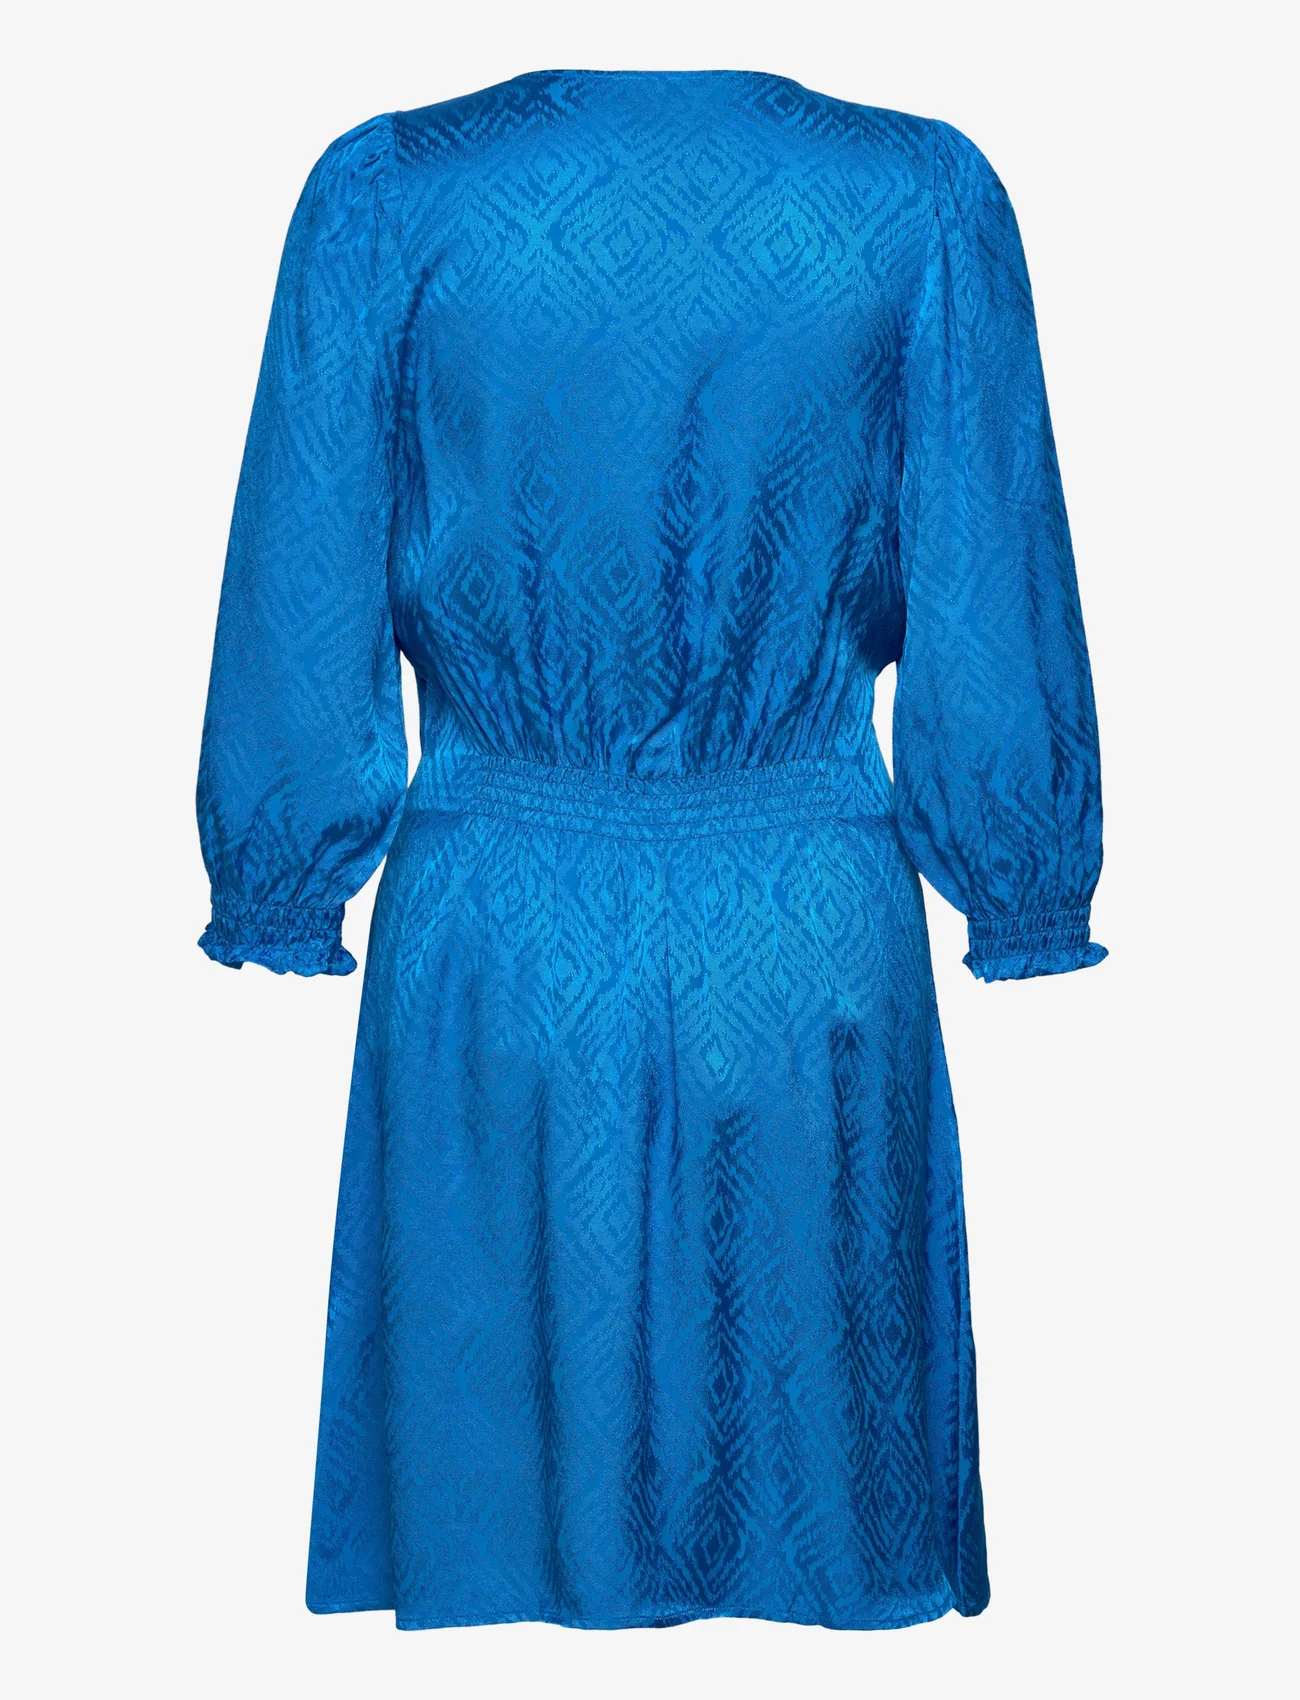 Minus - Lucia Kort Kjole - festklær til outlet-priser - ocean blue - 1